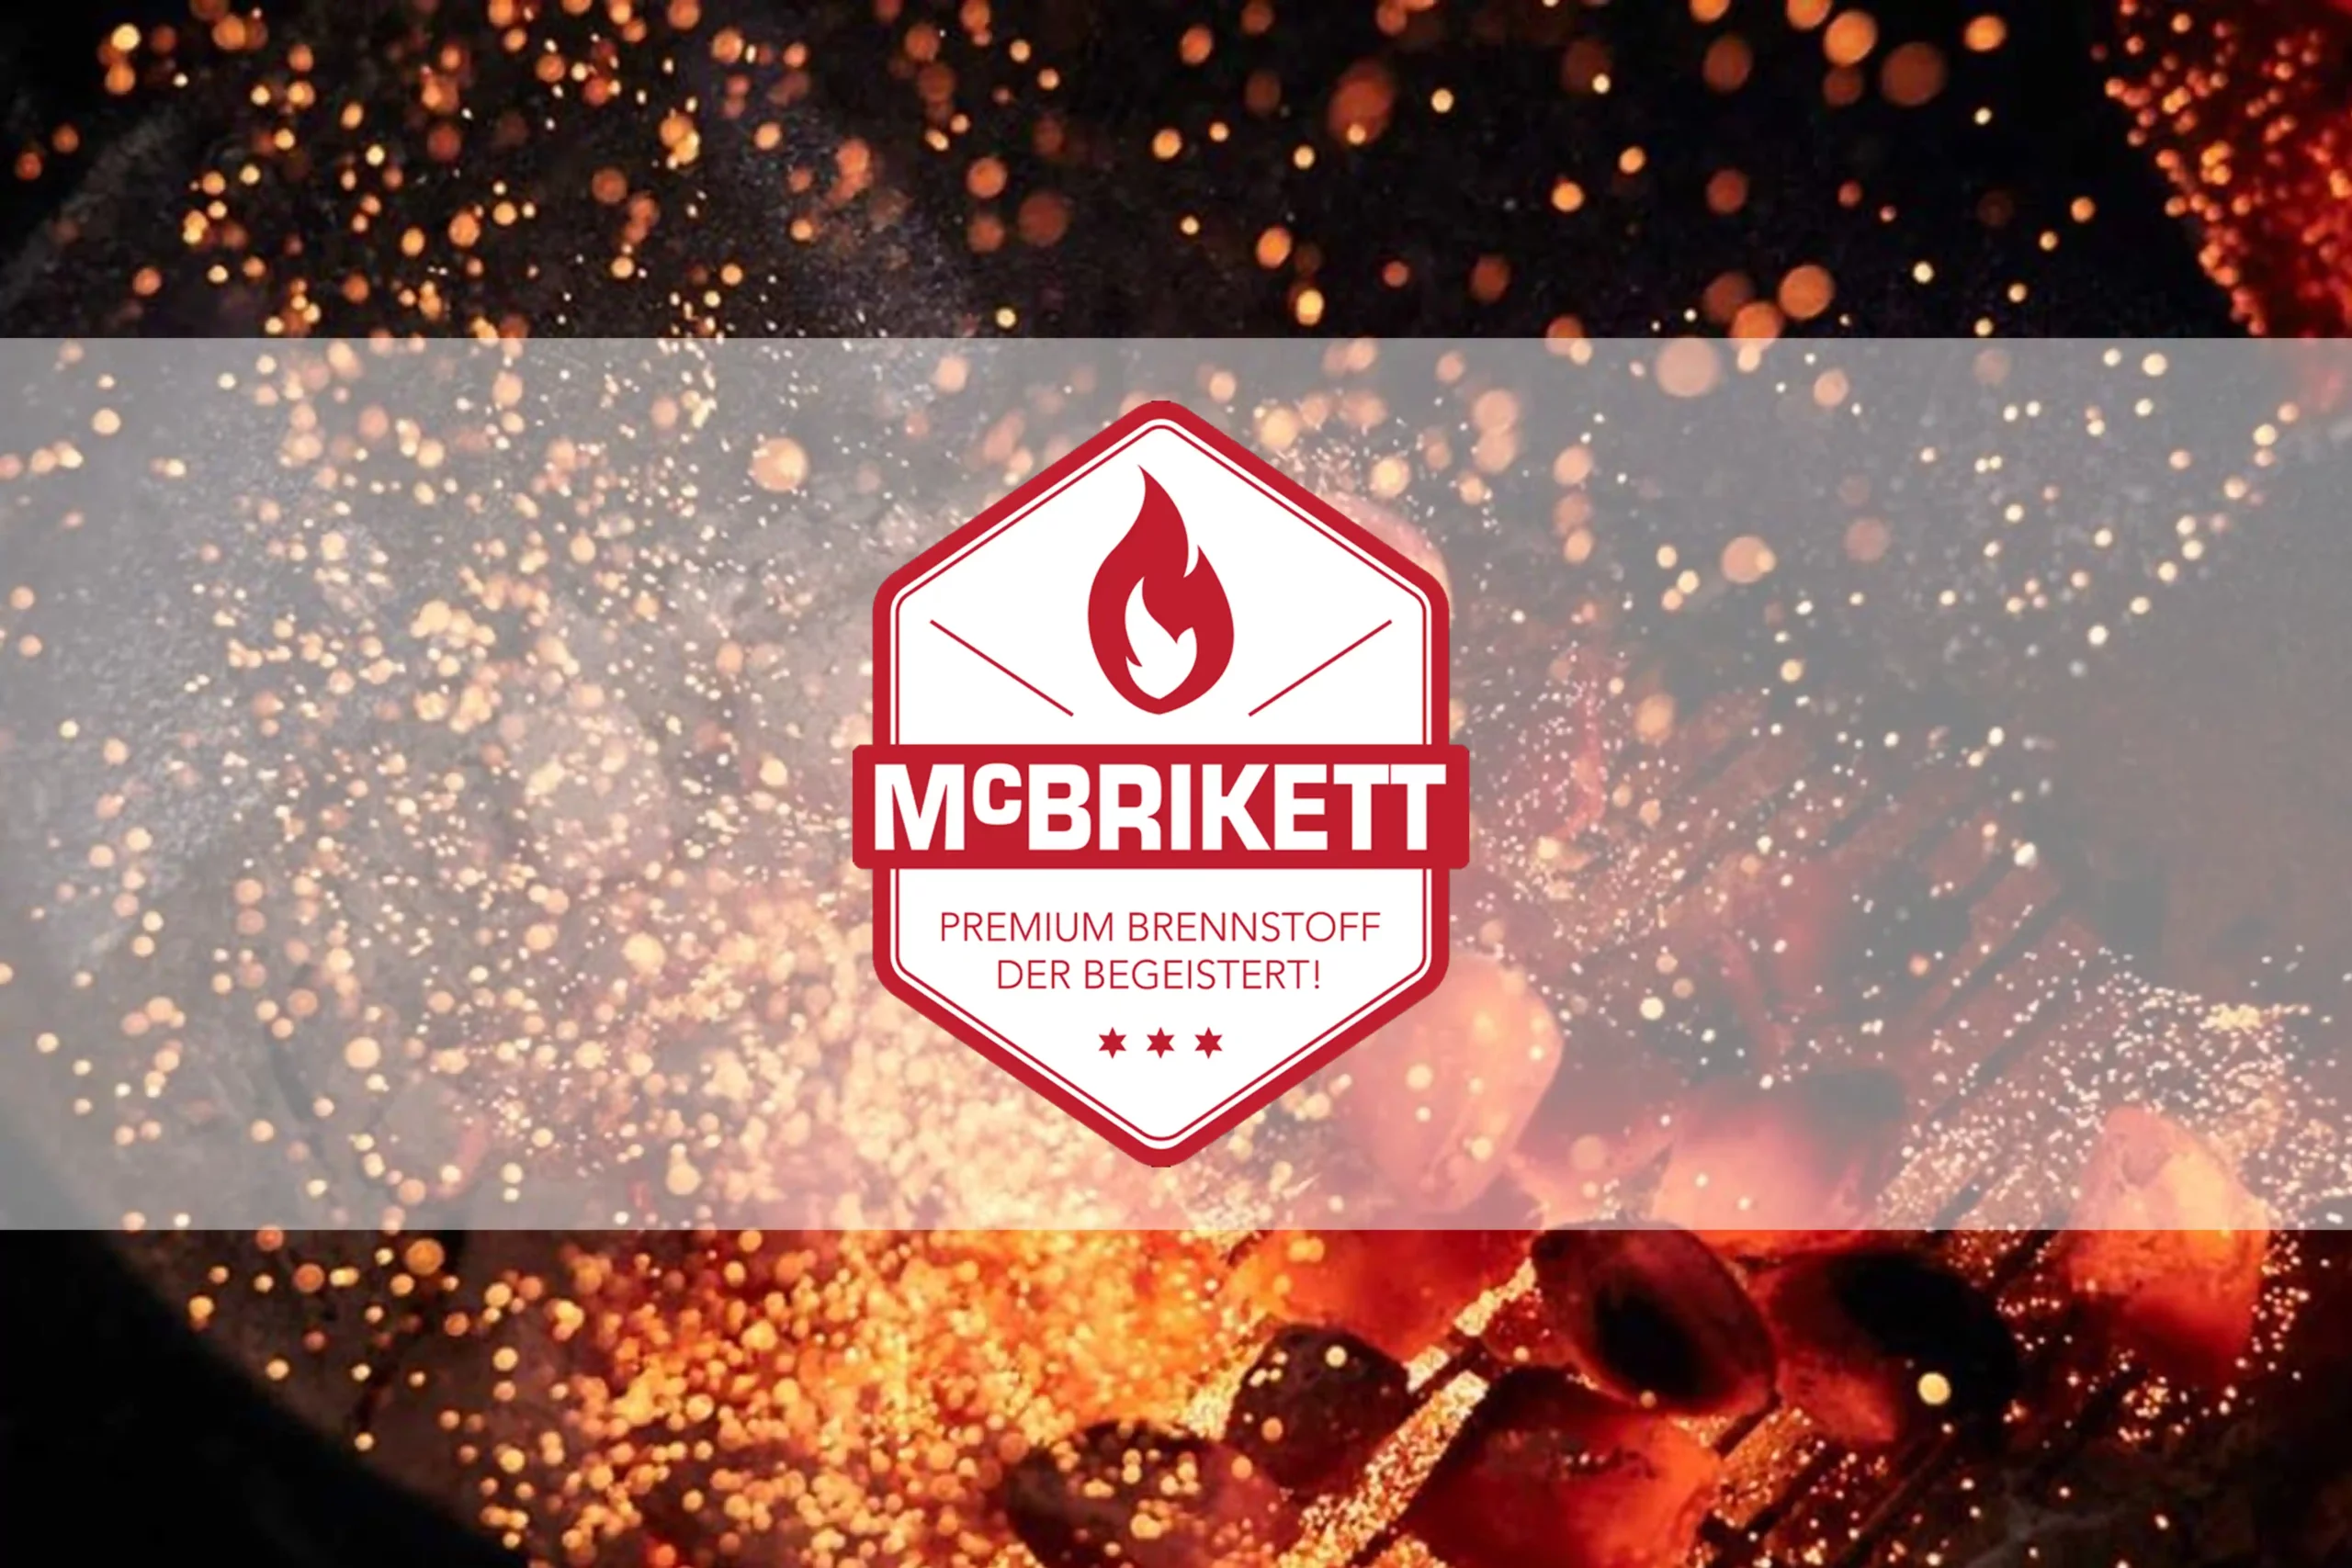 Mc Brikett Kohle Grill Feuer Zubehör Fachhändler Steelraum Grills und Lifestyle Michael Hofmann Hallstadt Bamberg BBQ